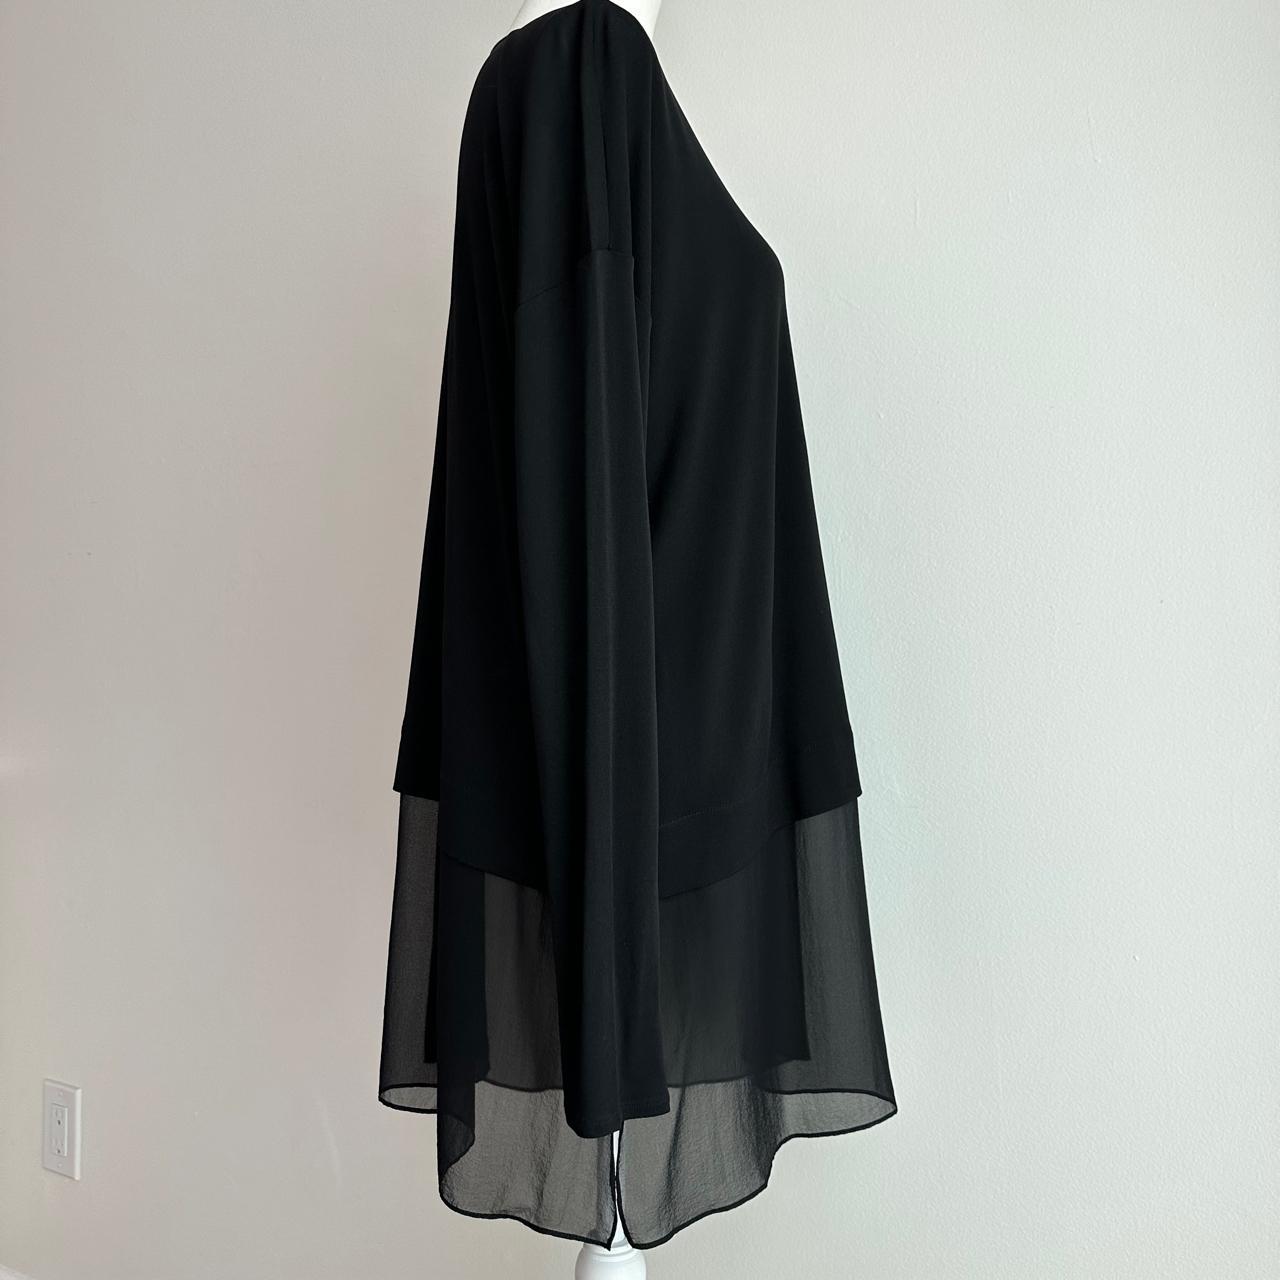 Eileen Fisher Women's Black Blouse | Depop